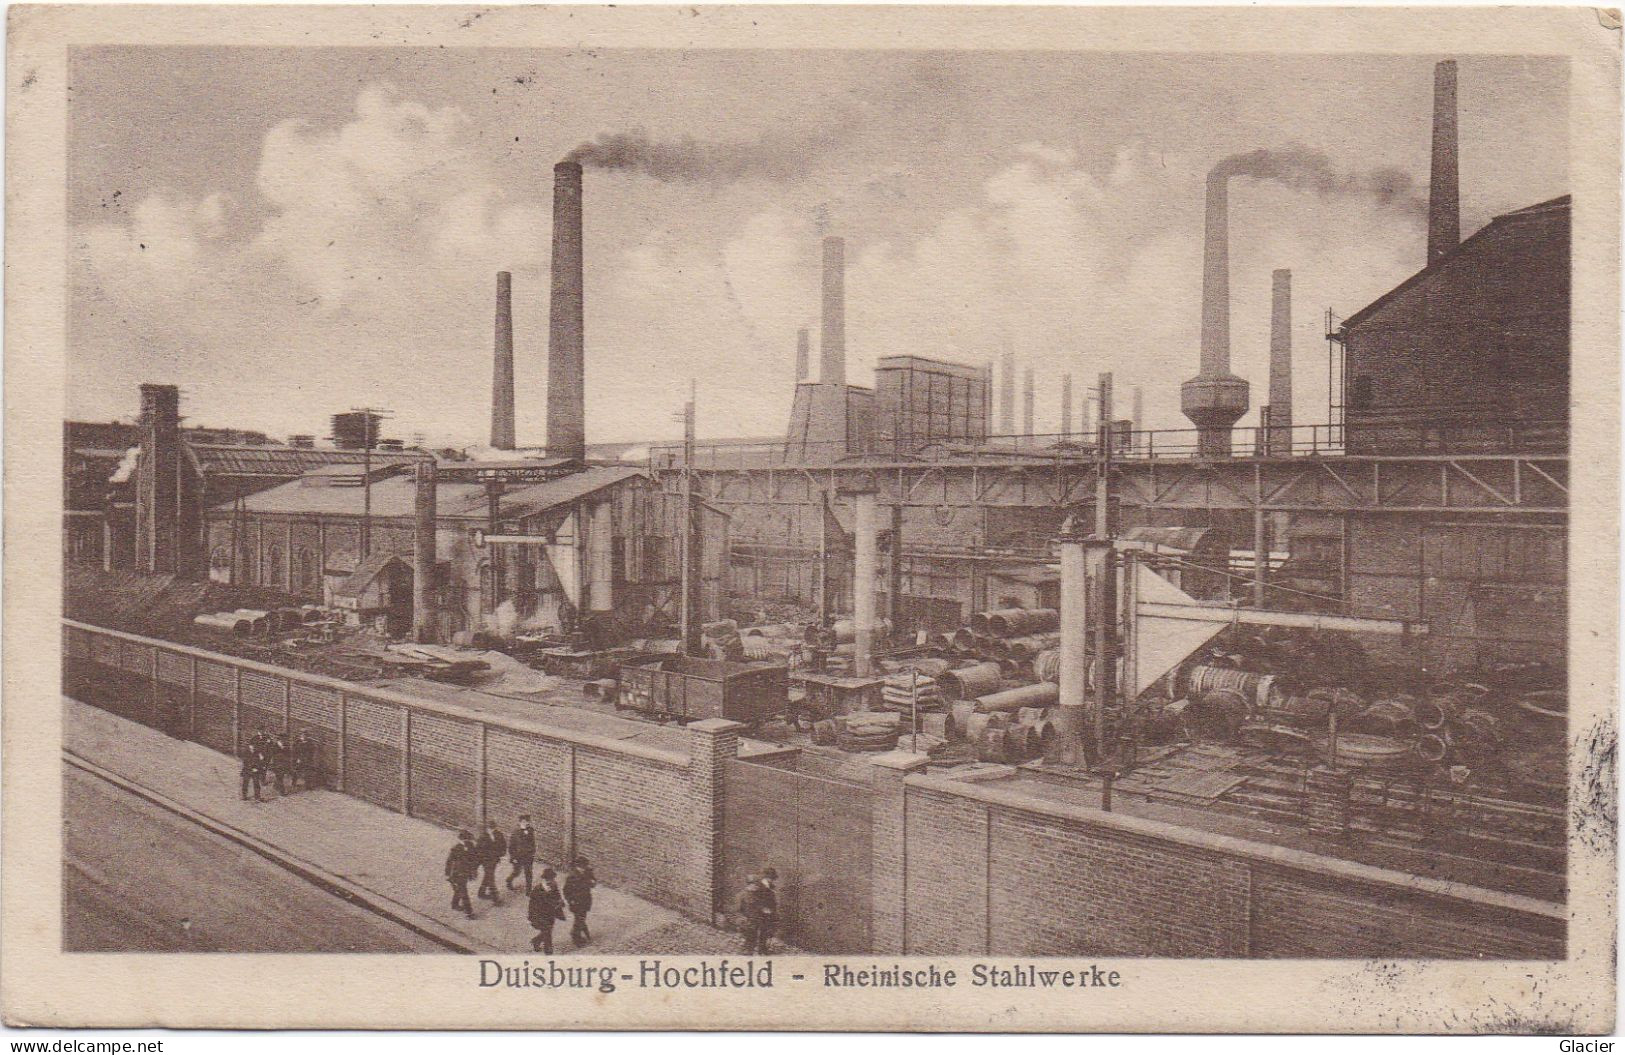 Duisburg-Hochfeld - Rheinische Stahlwerke - Militär Post Belgien - Legerposterij Belgie - Postes Militaire Belgique - Duisburg